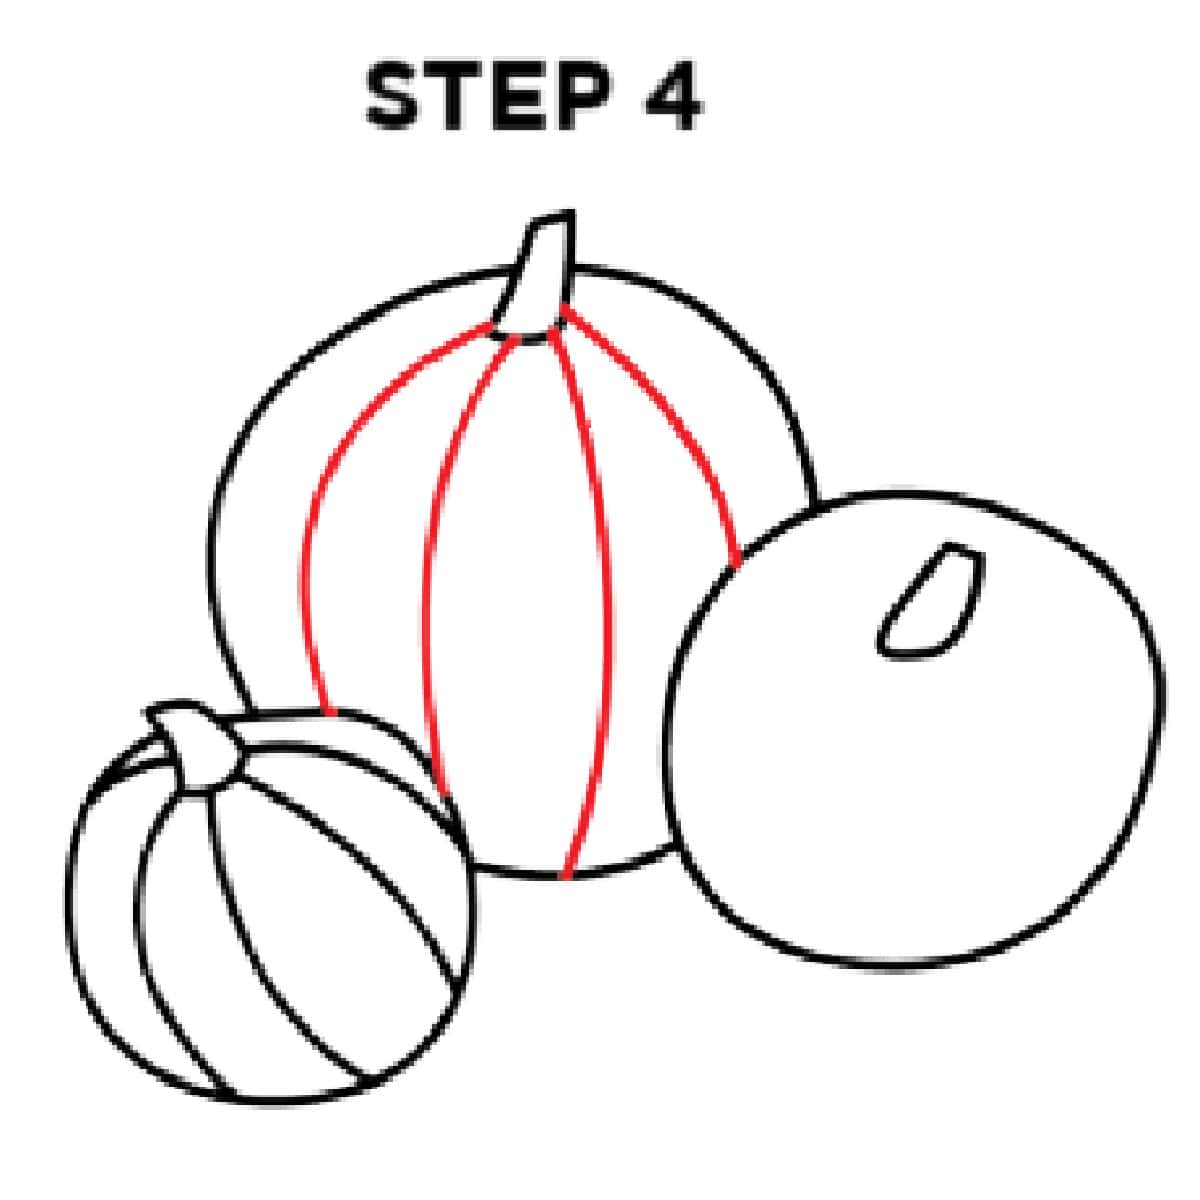 step 4 pumpkin drawing easy